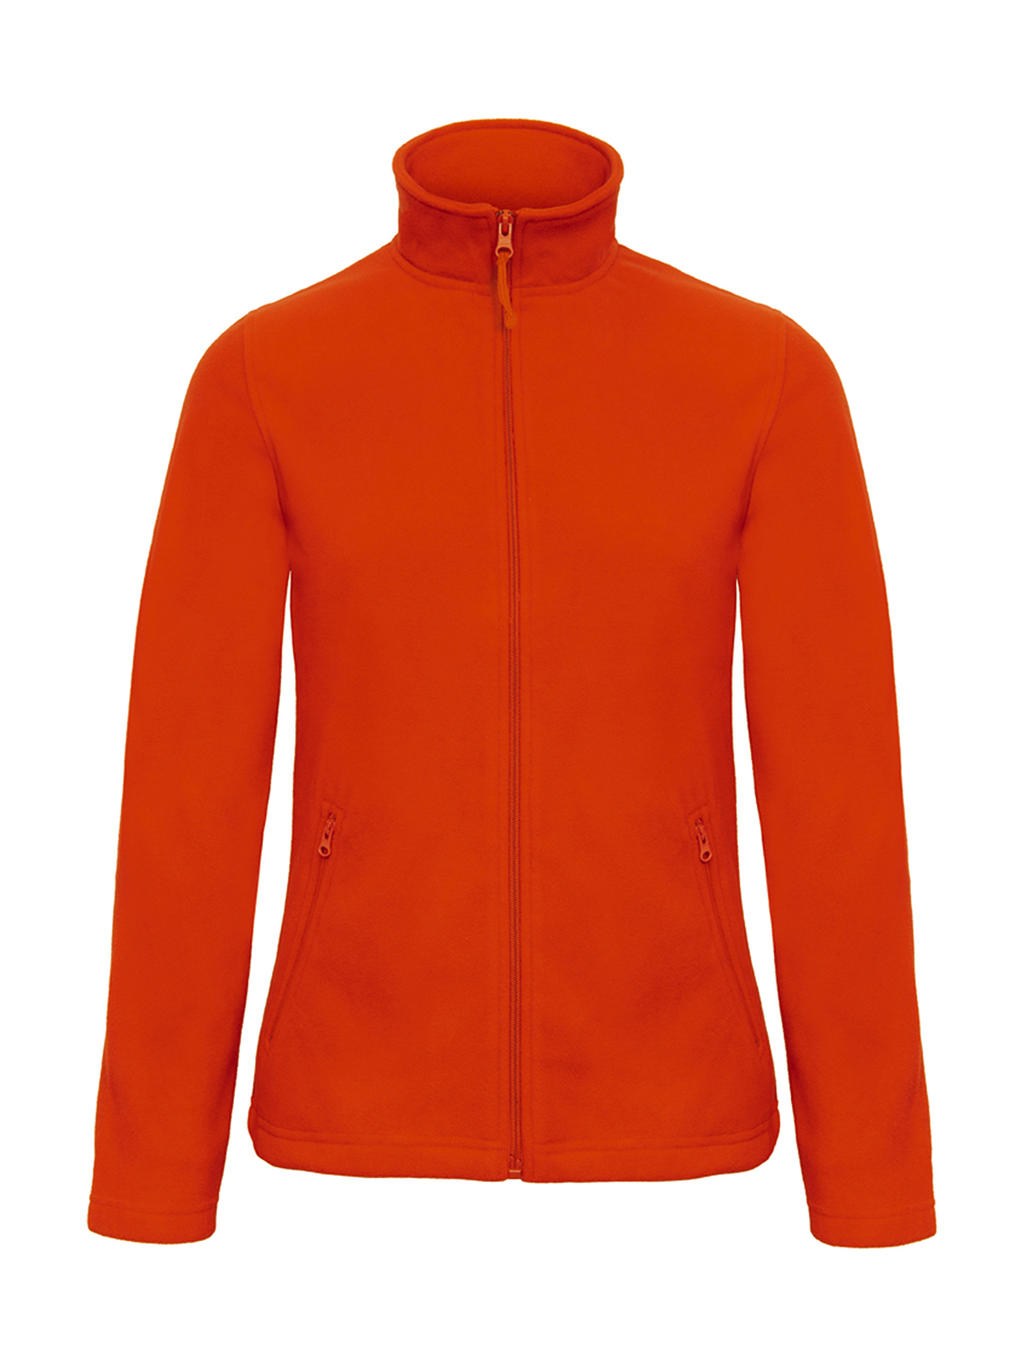  ID.501/women Micro Fleece Full Zip in Farbe Pumpkin Orange